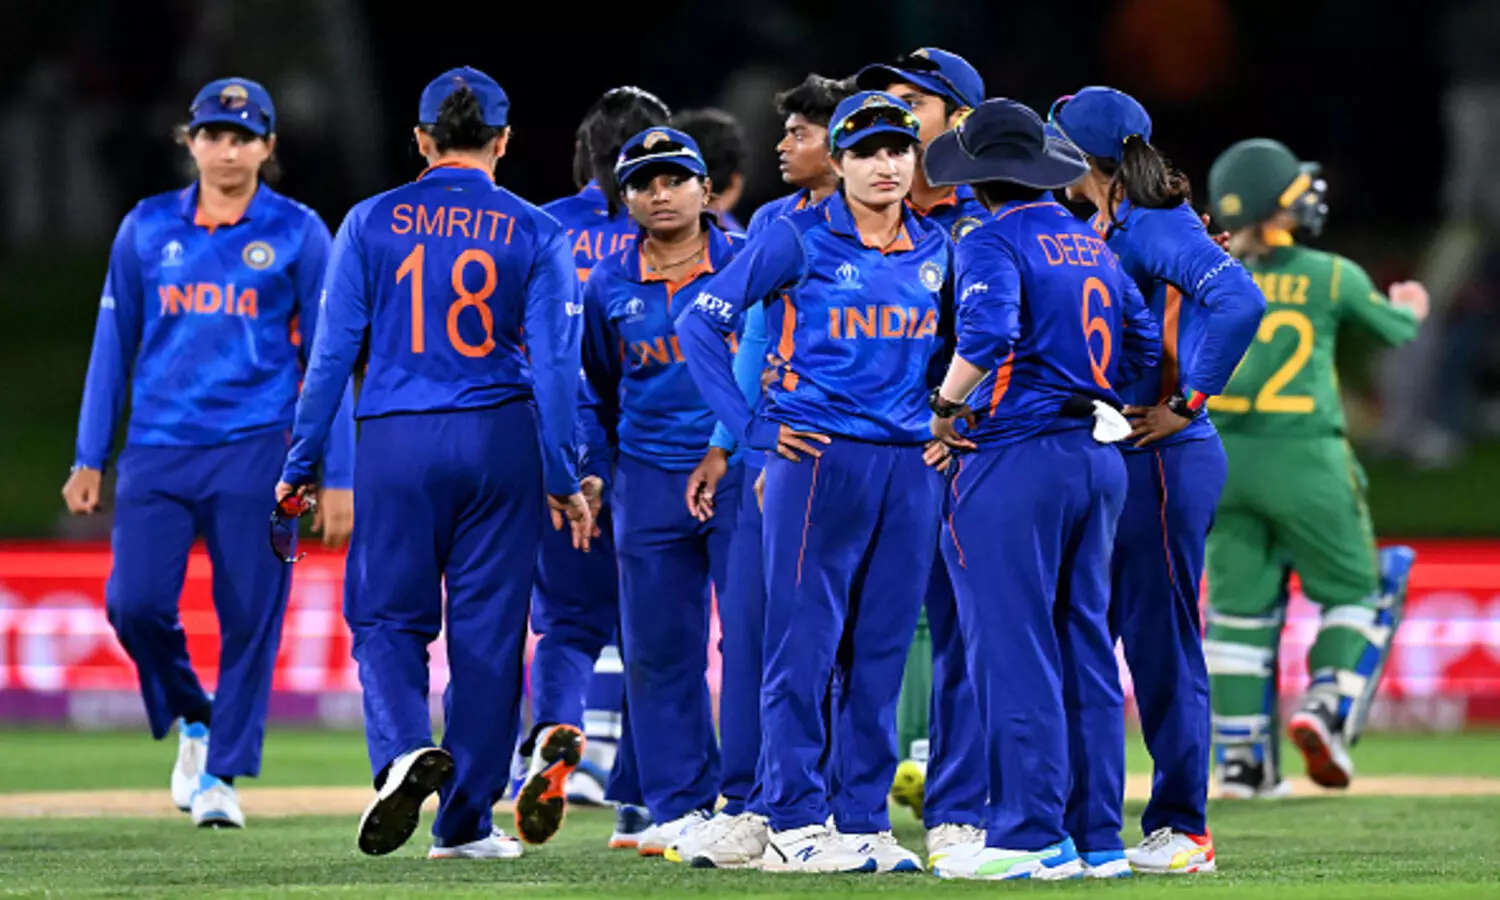 NDW vs AUSW CWG: भारत ने टॉस जीतकर किया बल्लेबाजी का फैसला, मेघना सिंह करेगी डेब्यू